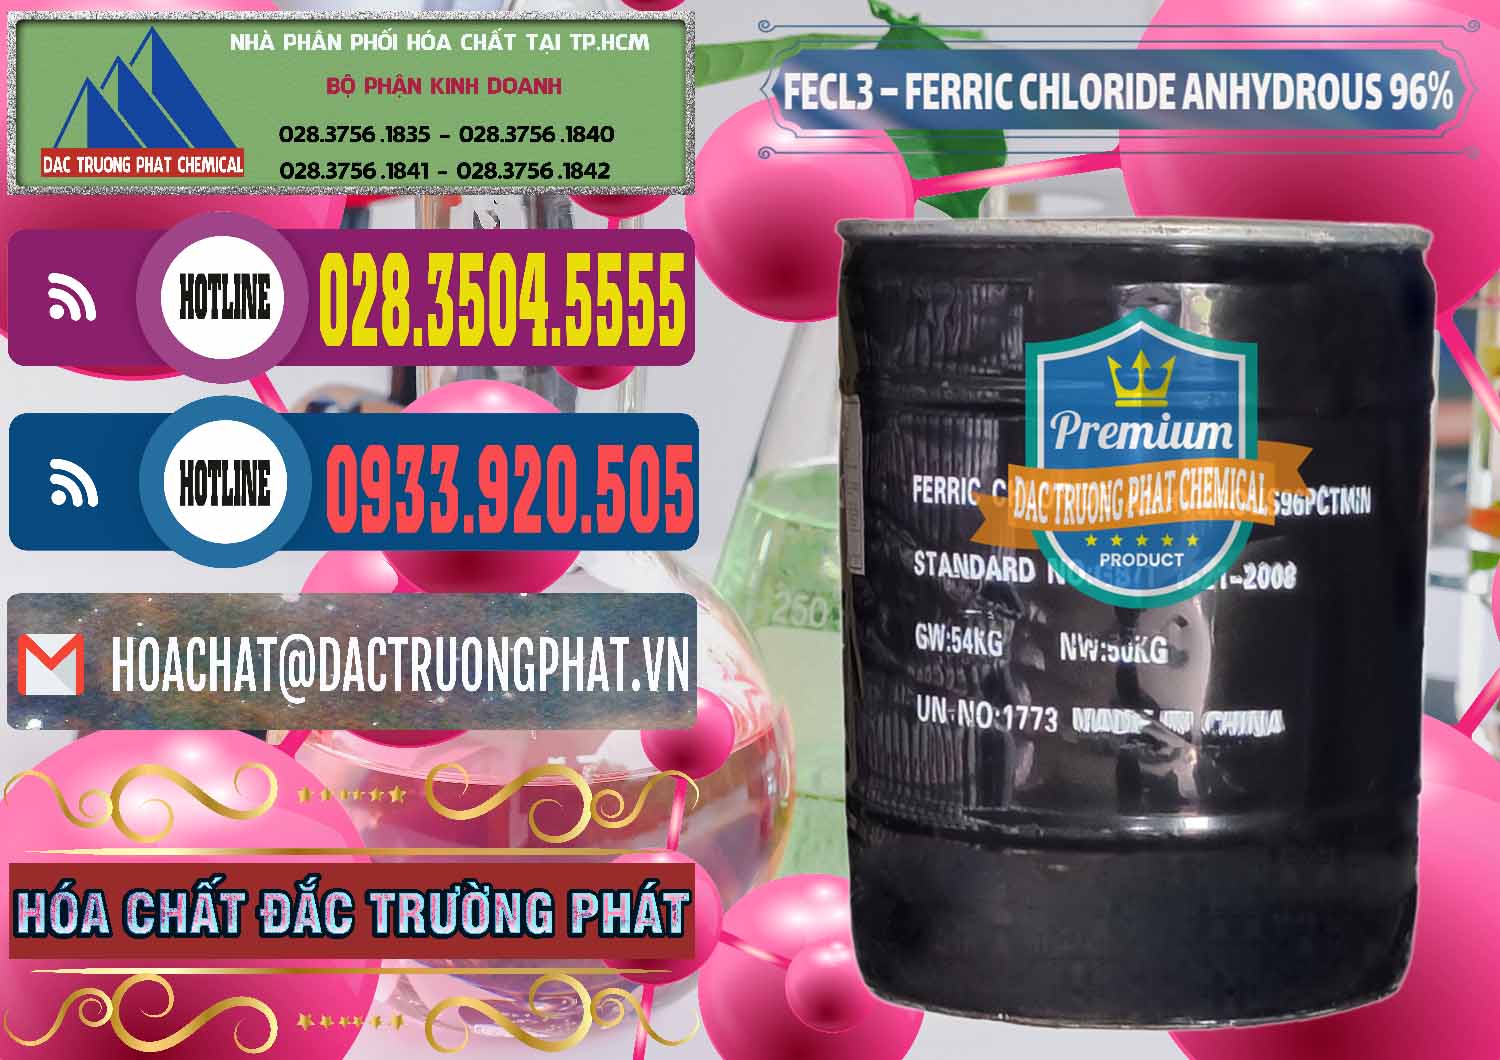 Chuyên bán và phân phối FECL3 – Ferric Chloride Anhydrous 96% Trung Quốc China - 0065 - Công ty chuyên cung cấp ( bán ) hóa chất tại TP.HCM - muabanhoachat.com.vn